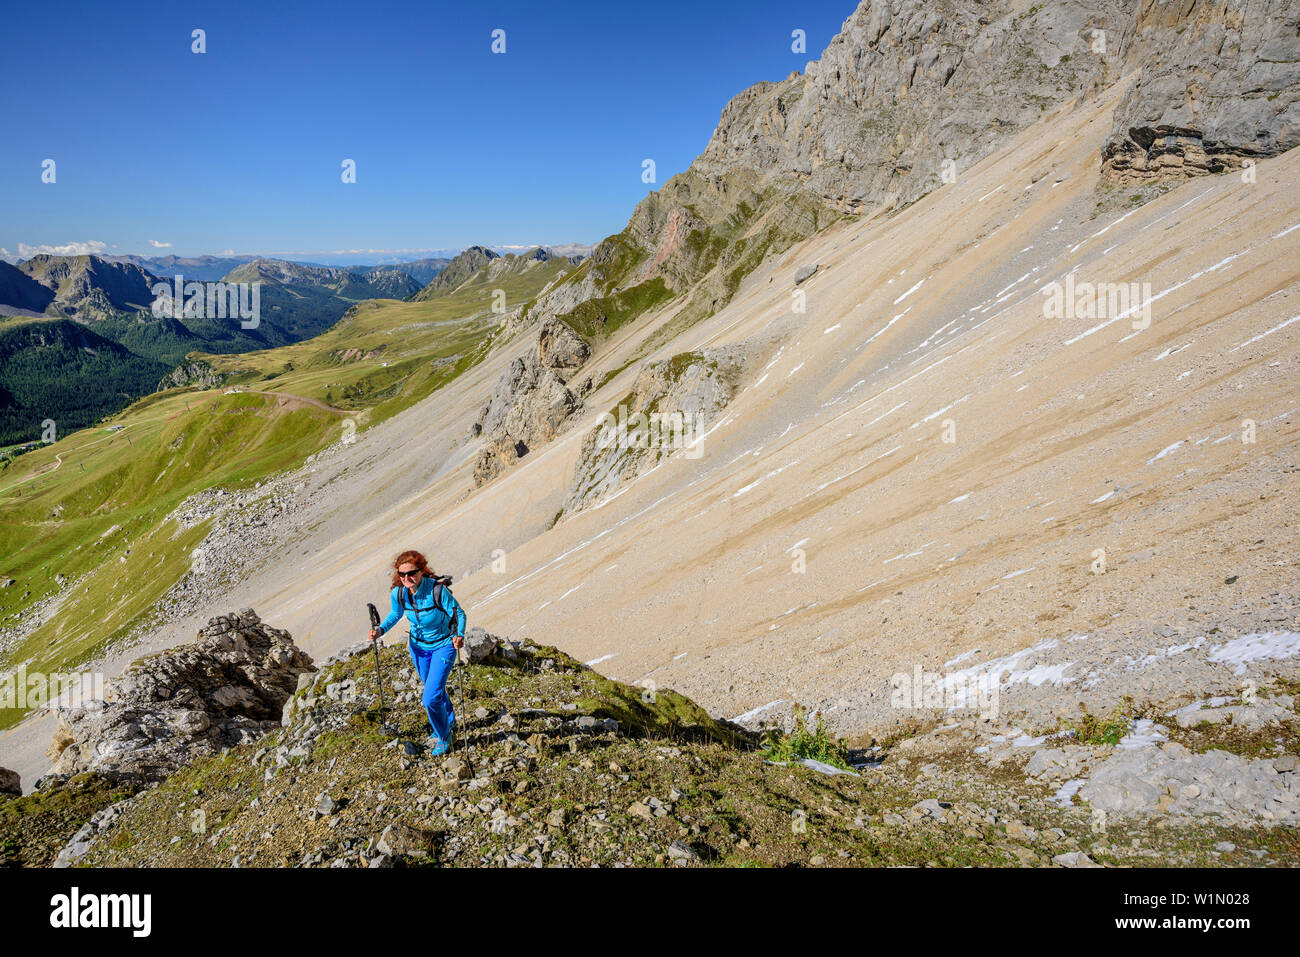 Mujer caminata ascendiendo hacia la cima dell'Uomo, Cima dell'Uomo, Marmolada, dolomitas, Patrimonio Mundial de la UNESCO, dolomitas, Trentino, Italia Foto de stock